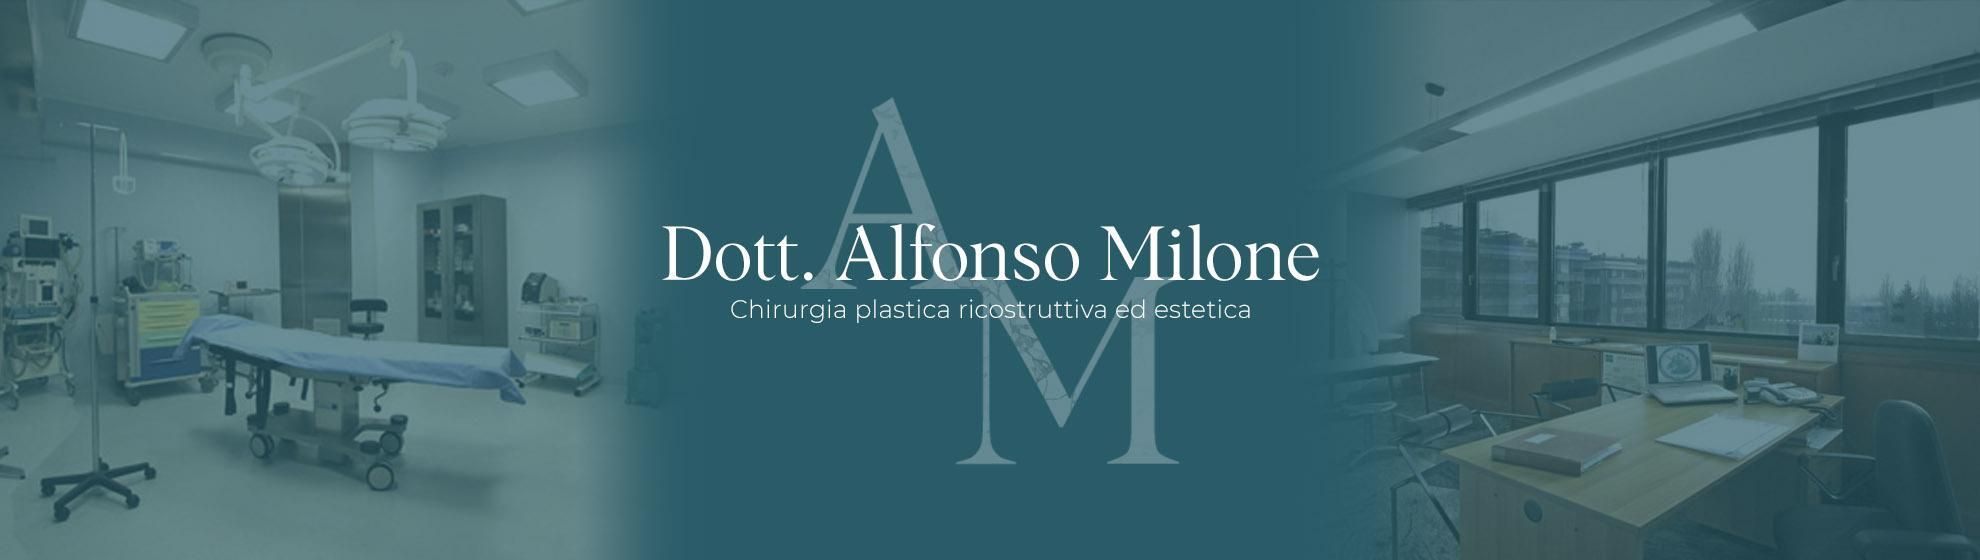 Dott. Alfonso Milone